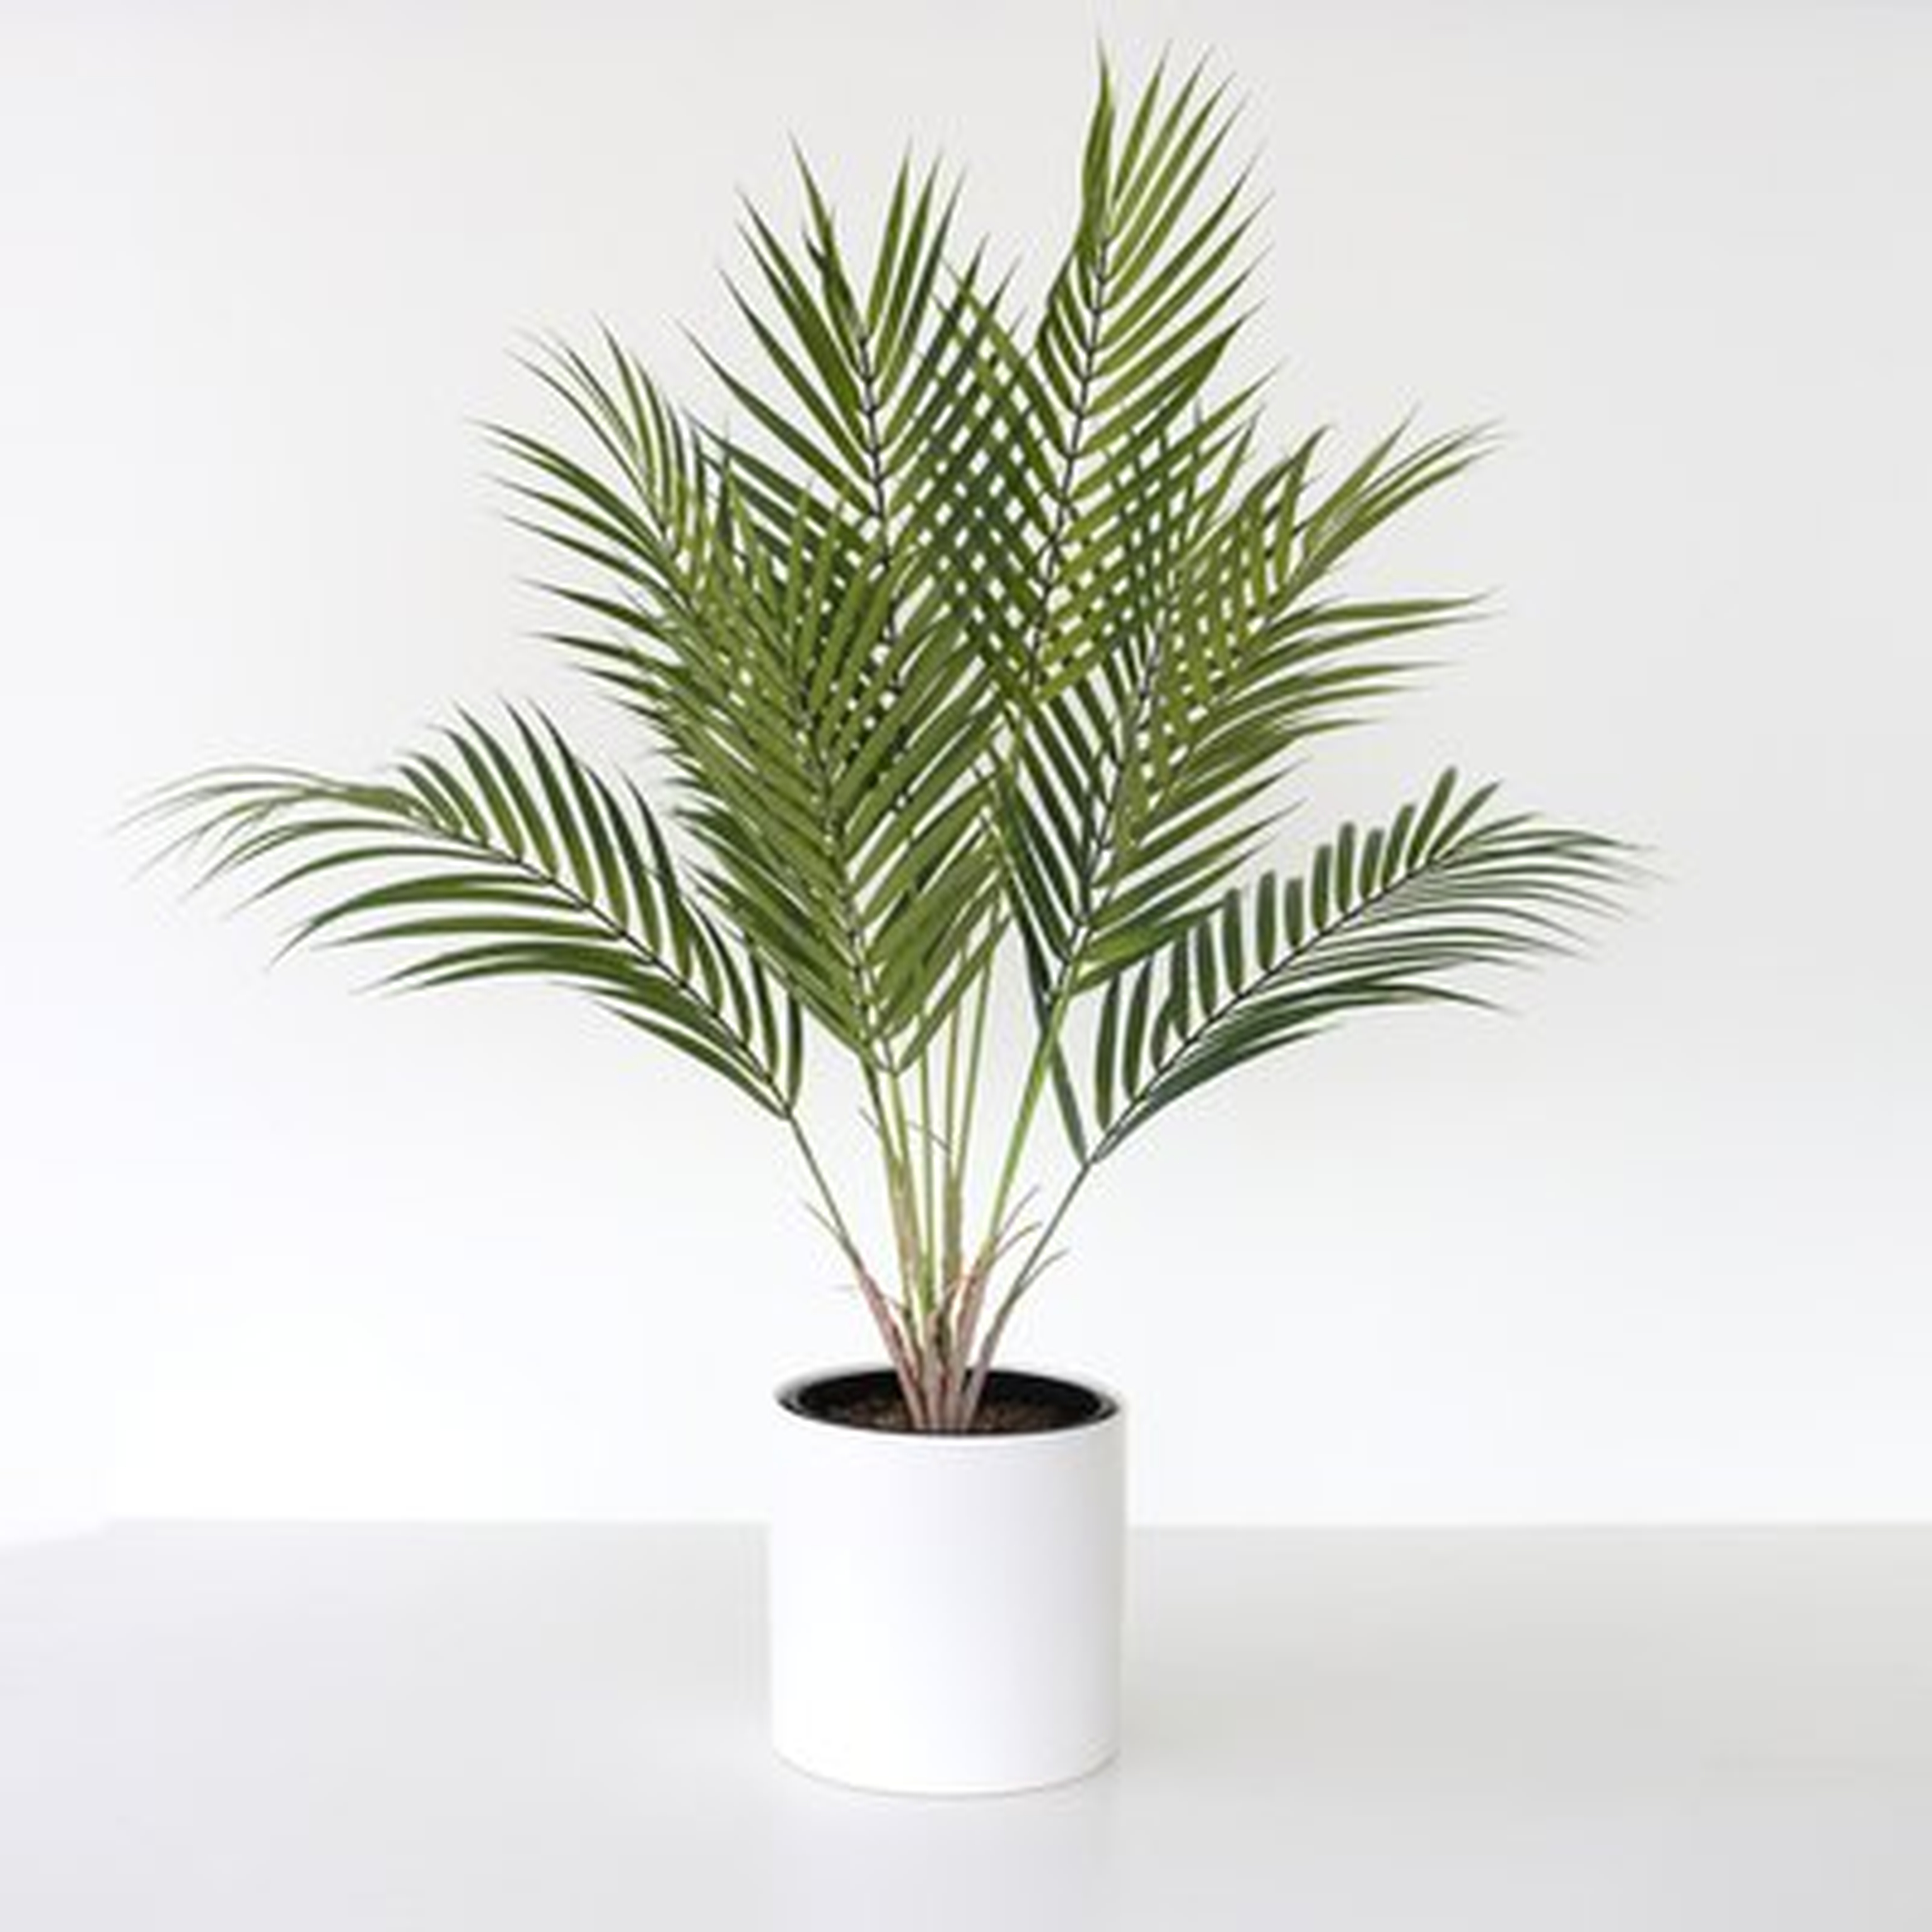 Artificial Areca Palm Plant in Ceramic Vase - Wayfair